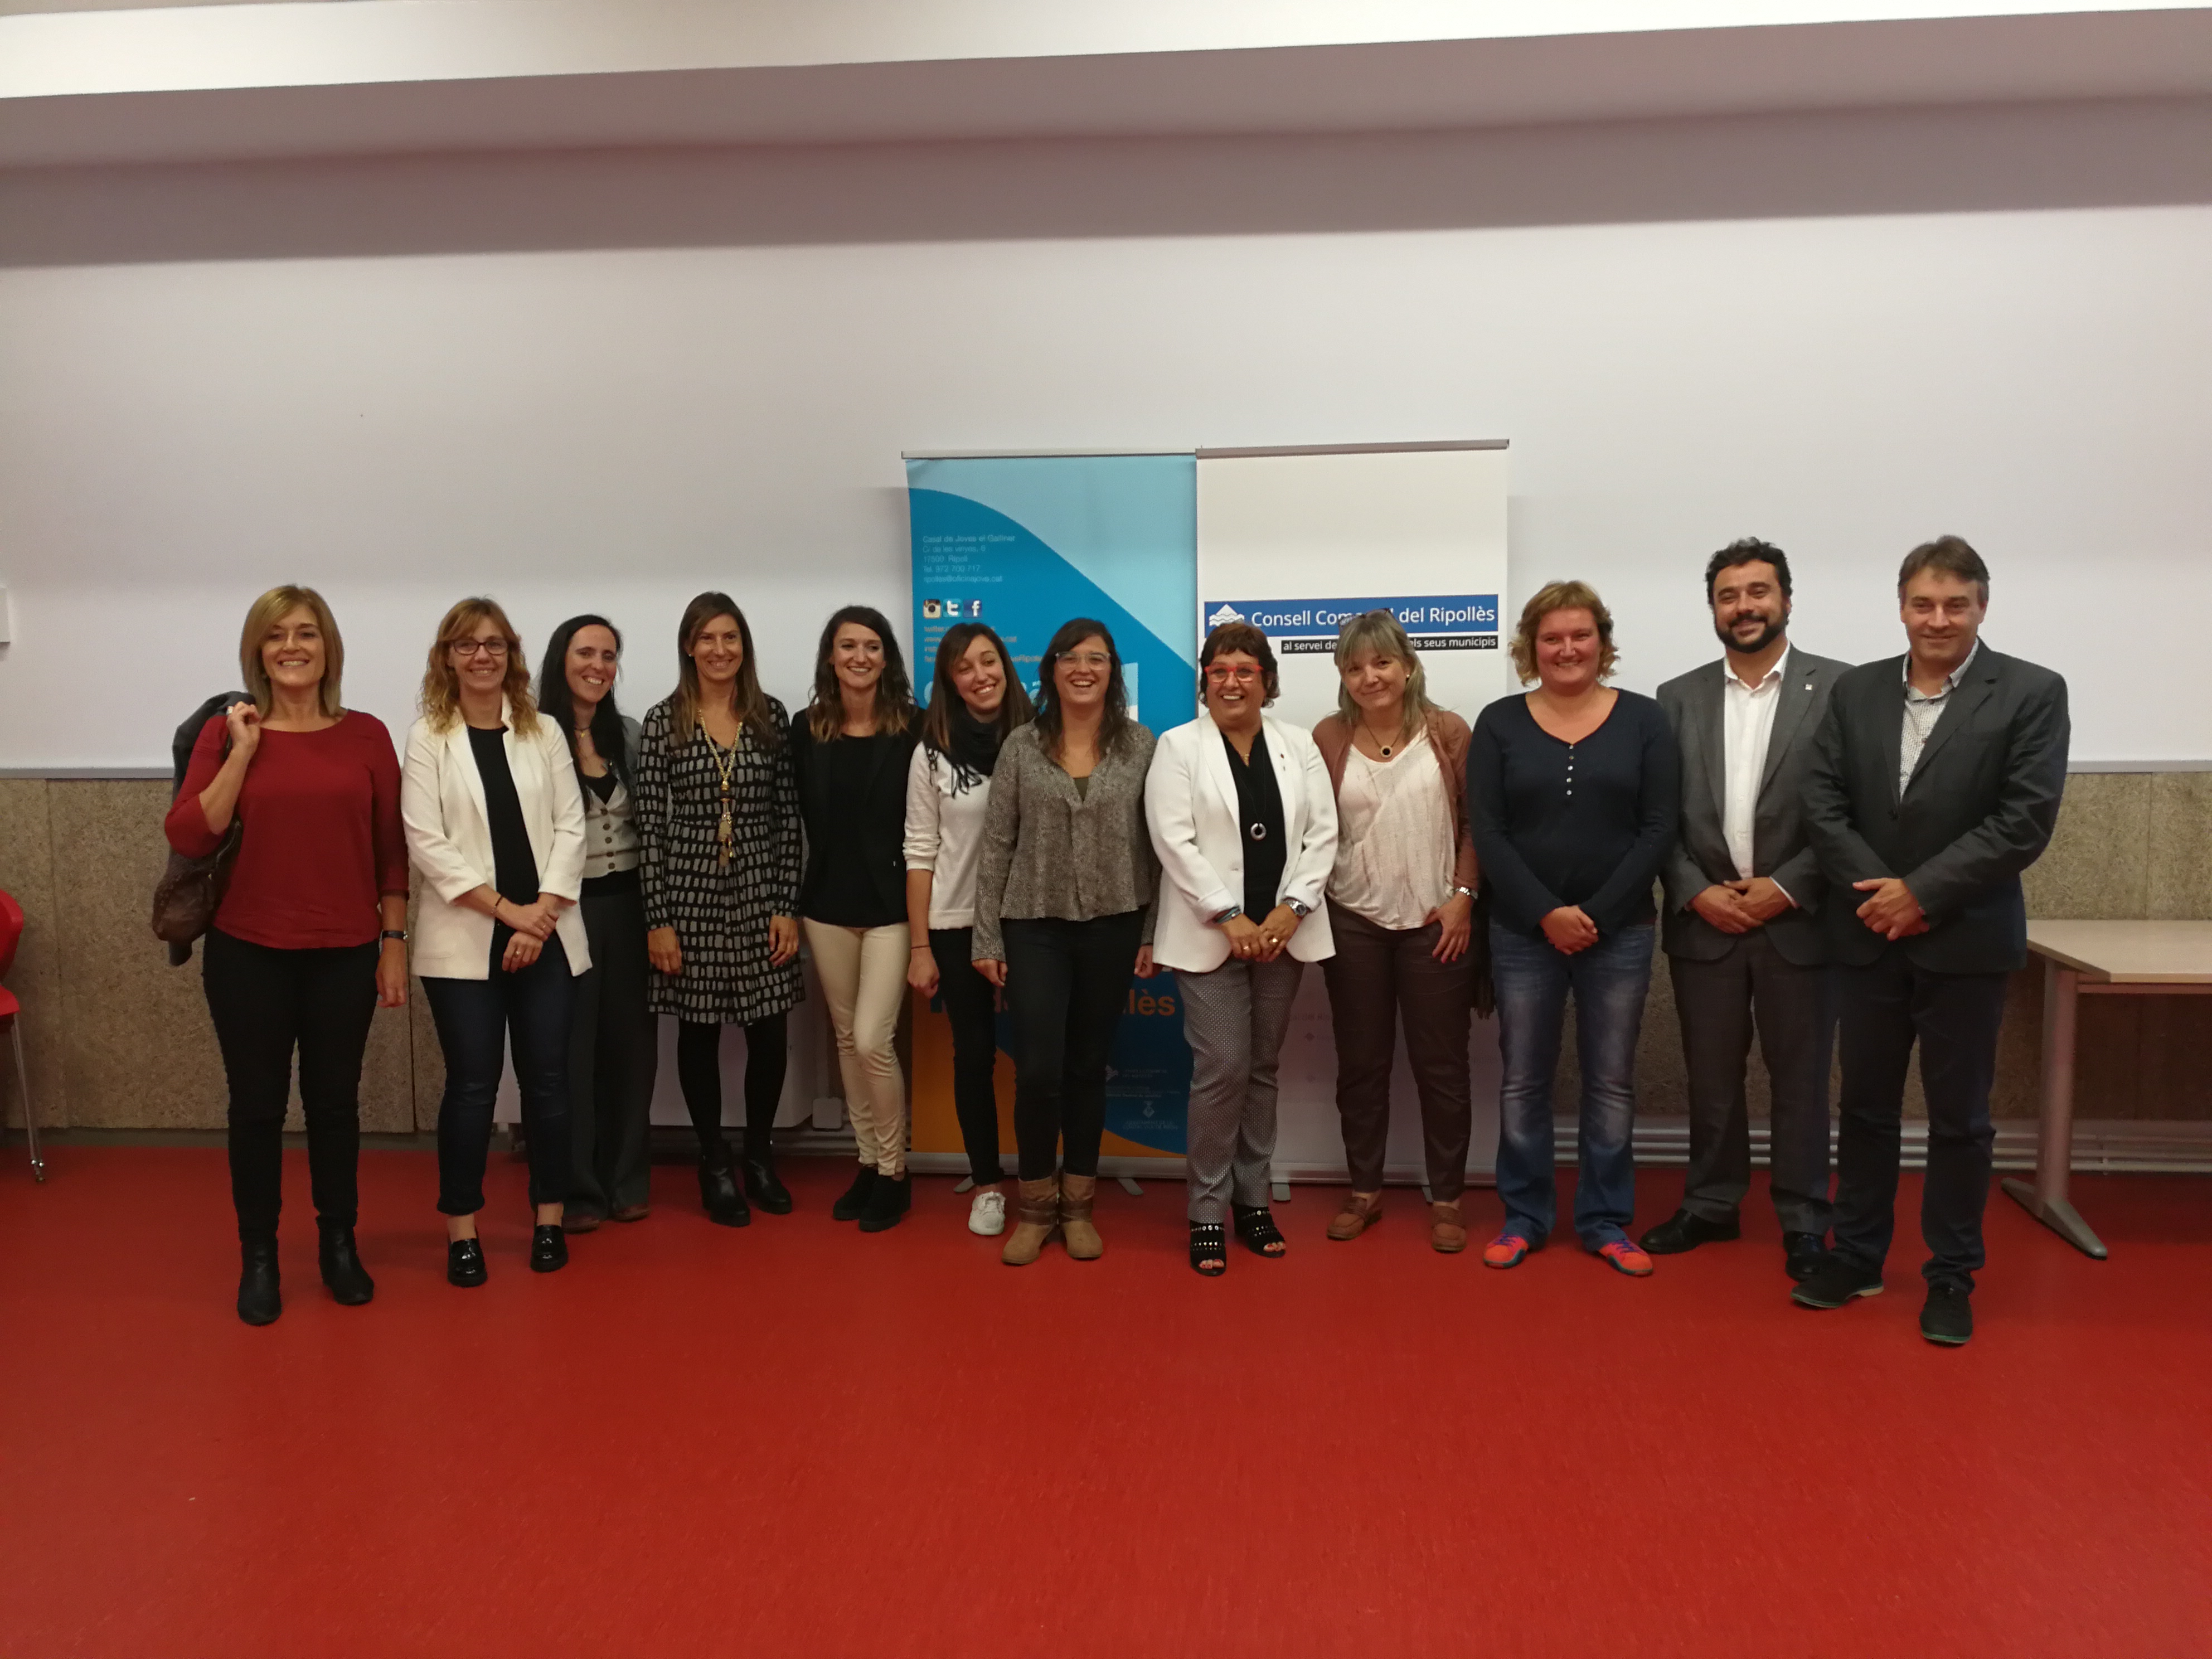 La consellera va cloure la visita a l'oficina jove de Ripoll acompanyada de l'alcalde Jordi Munell, entre altres